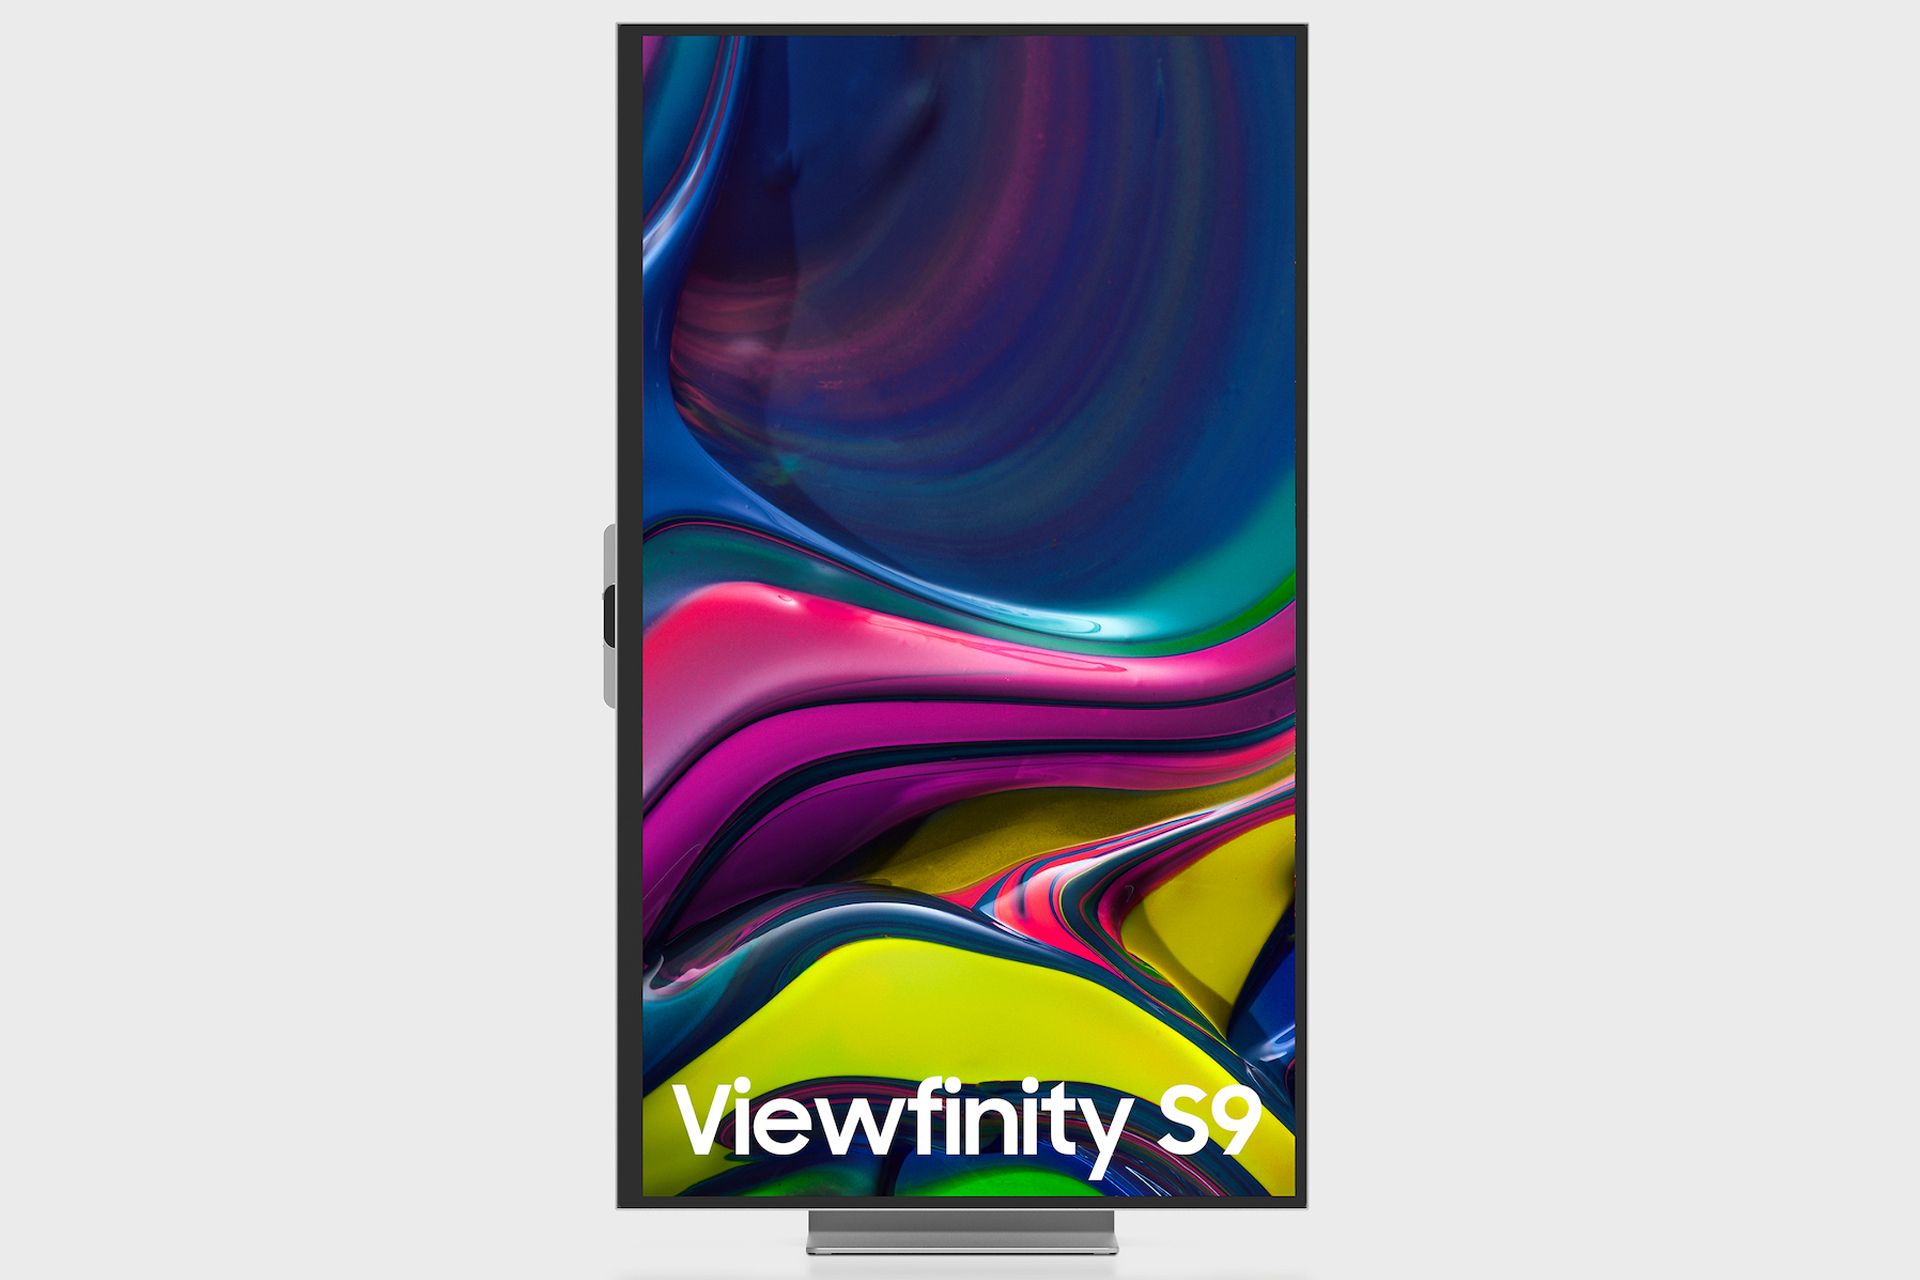 مانیتور سامسونگ Samsung ViewFinity S9 5K در حالت عمودی